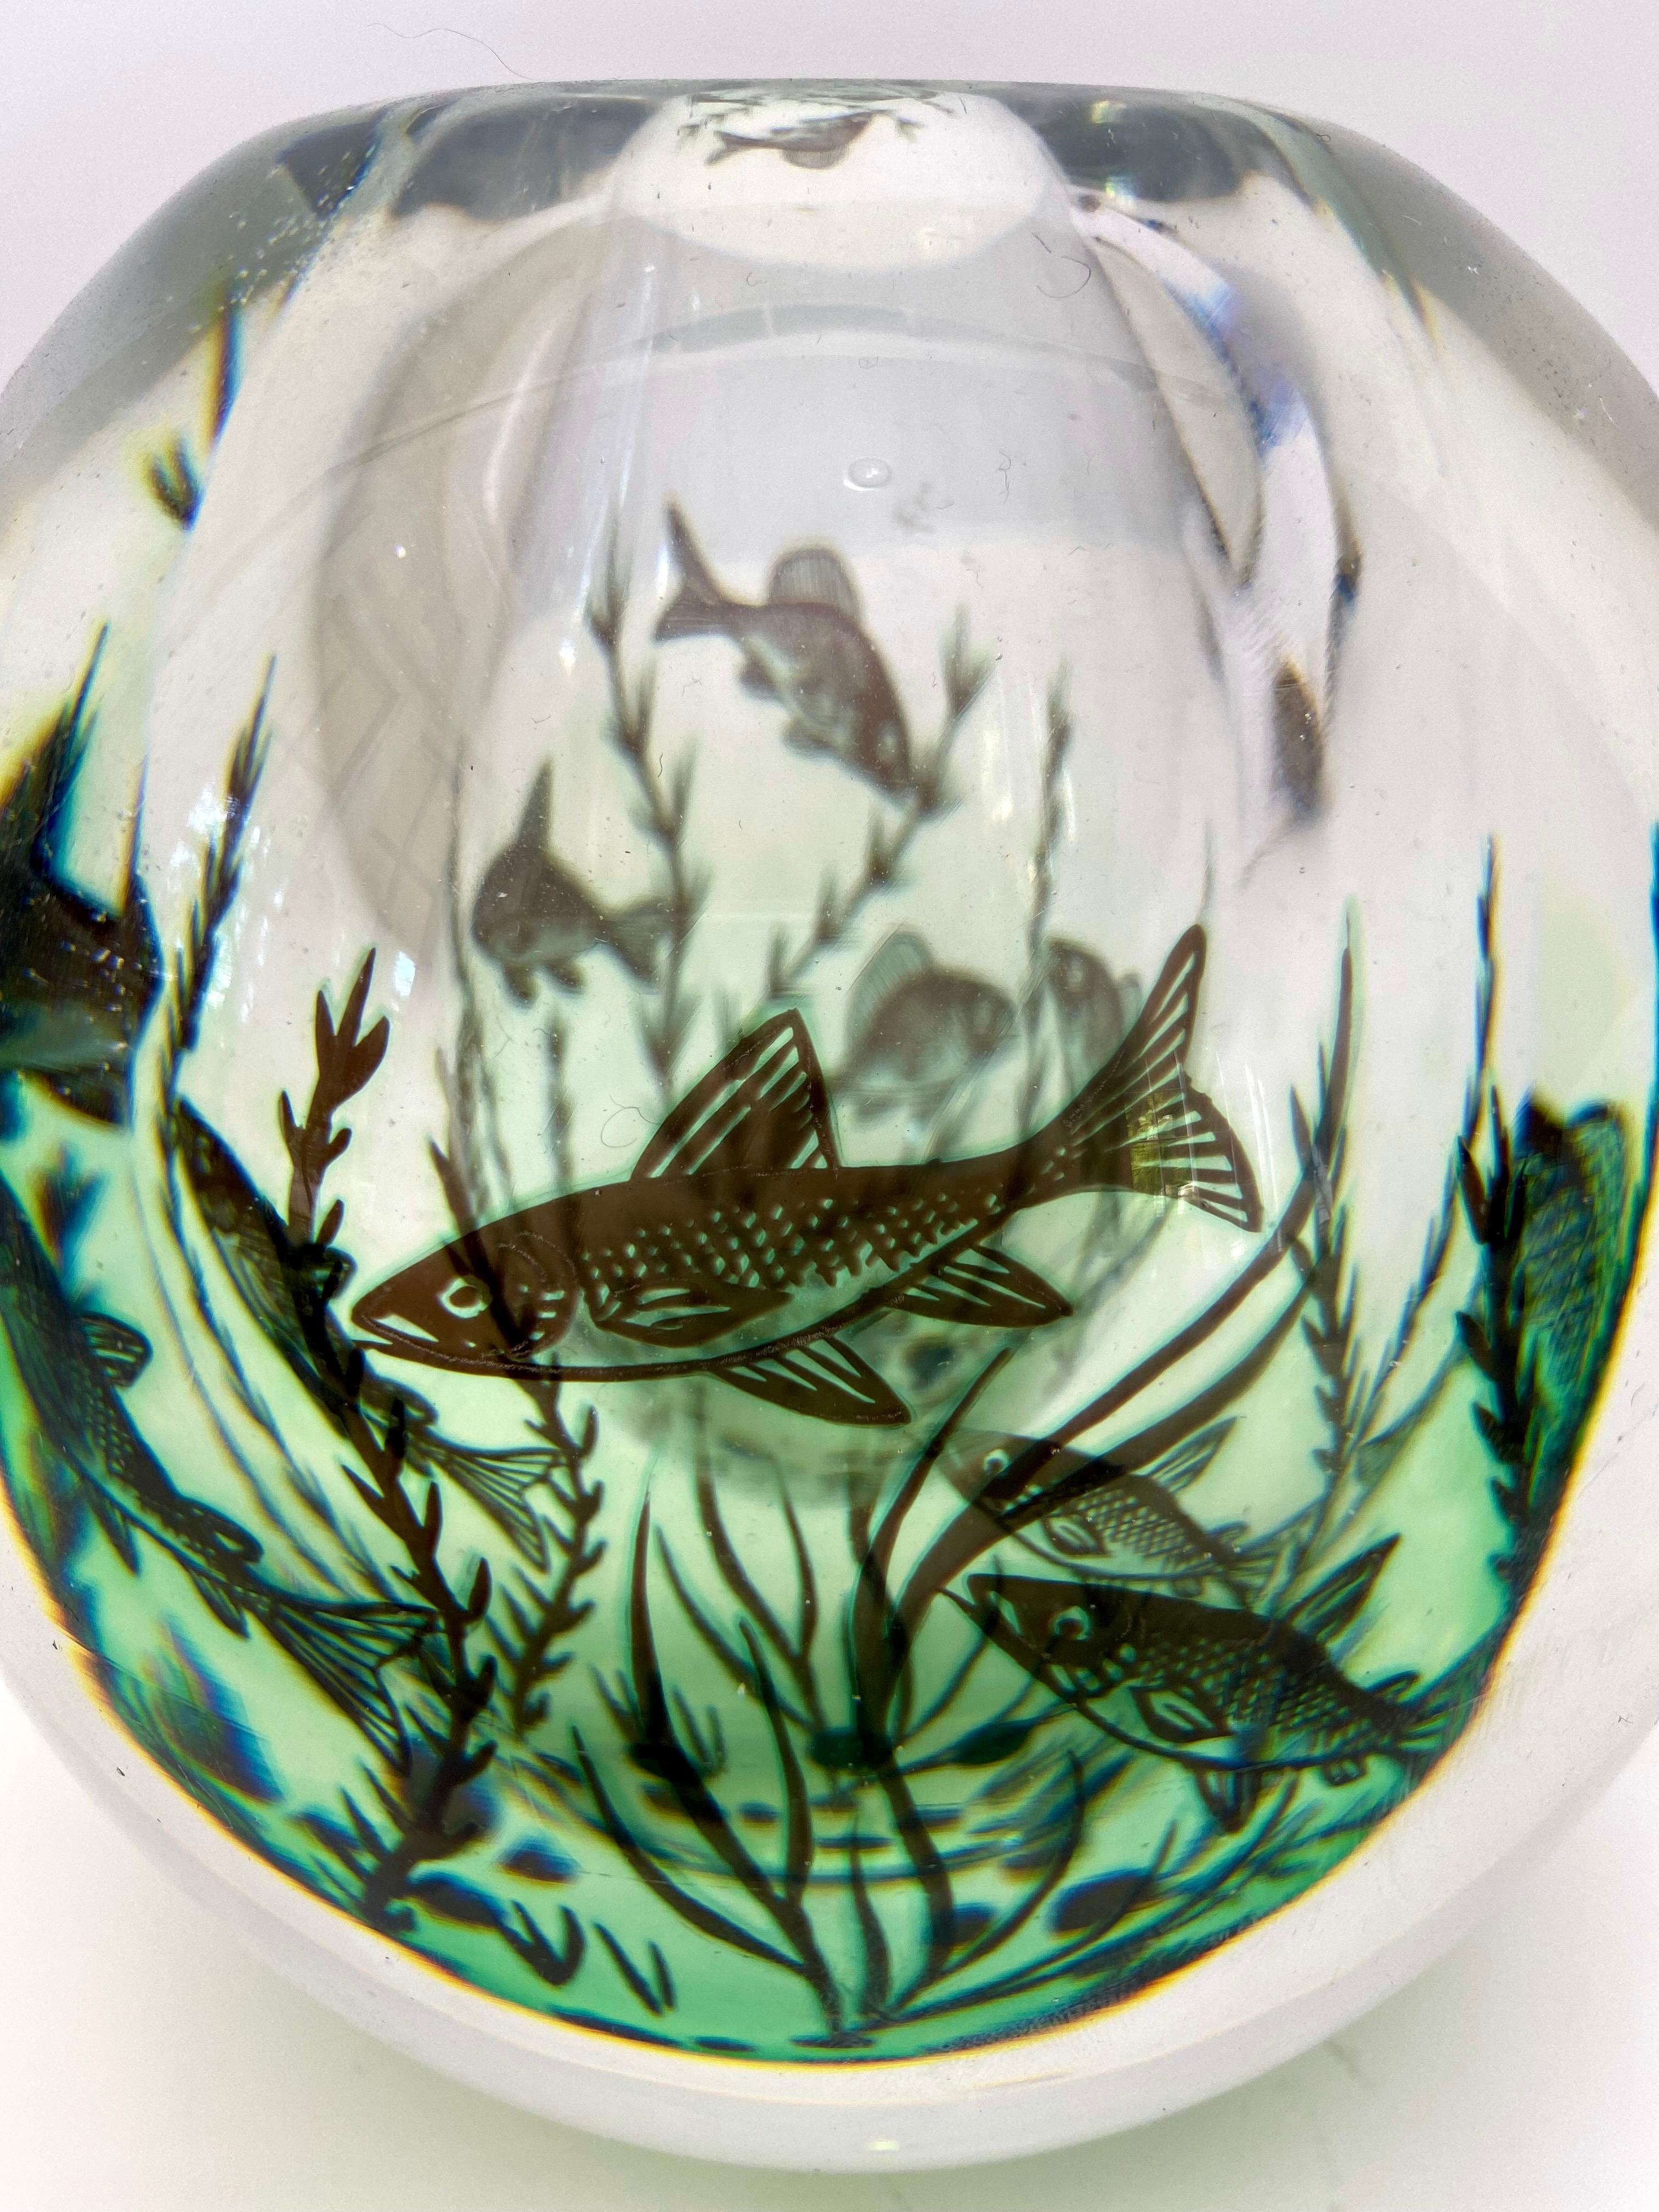 Superbe vase en forme de poisson graal par Edward Hald pour Orrefors... une véritable forme d'art avec de multiples couches de verre. Un savoir-faire incroyable et un véritable trésor. Le verre d'art à son meilleur !
Signé Orrefors, Graal, Edward